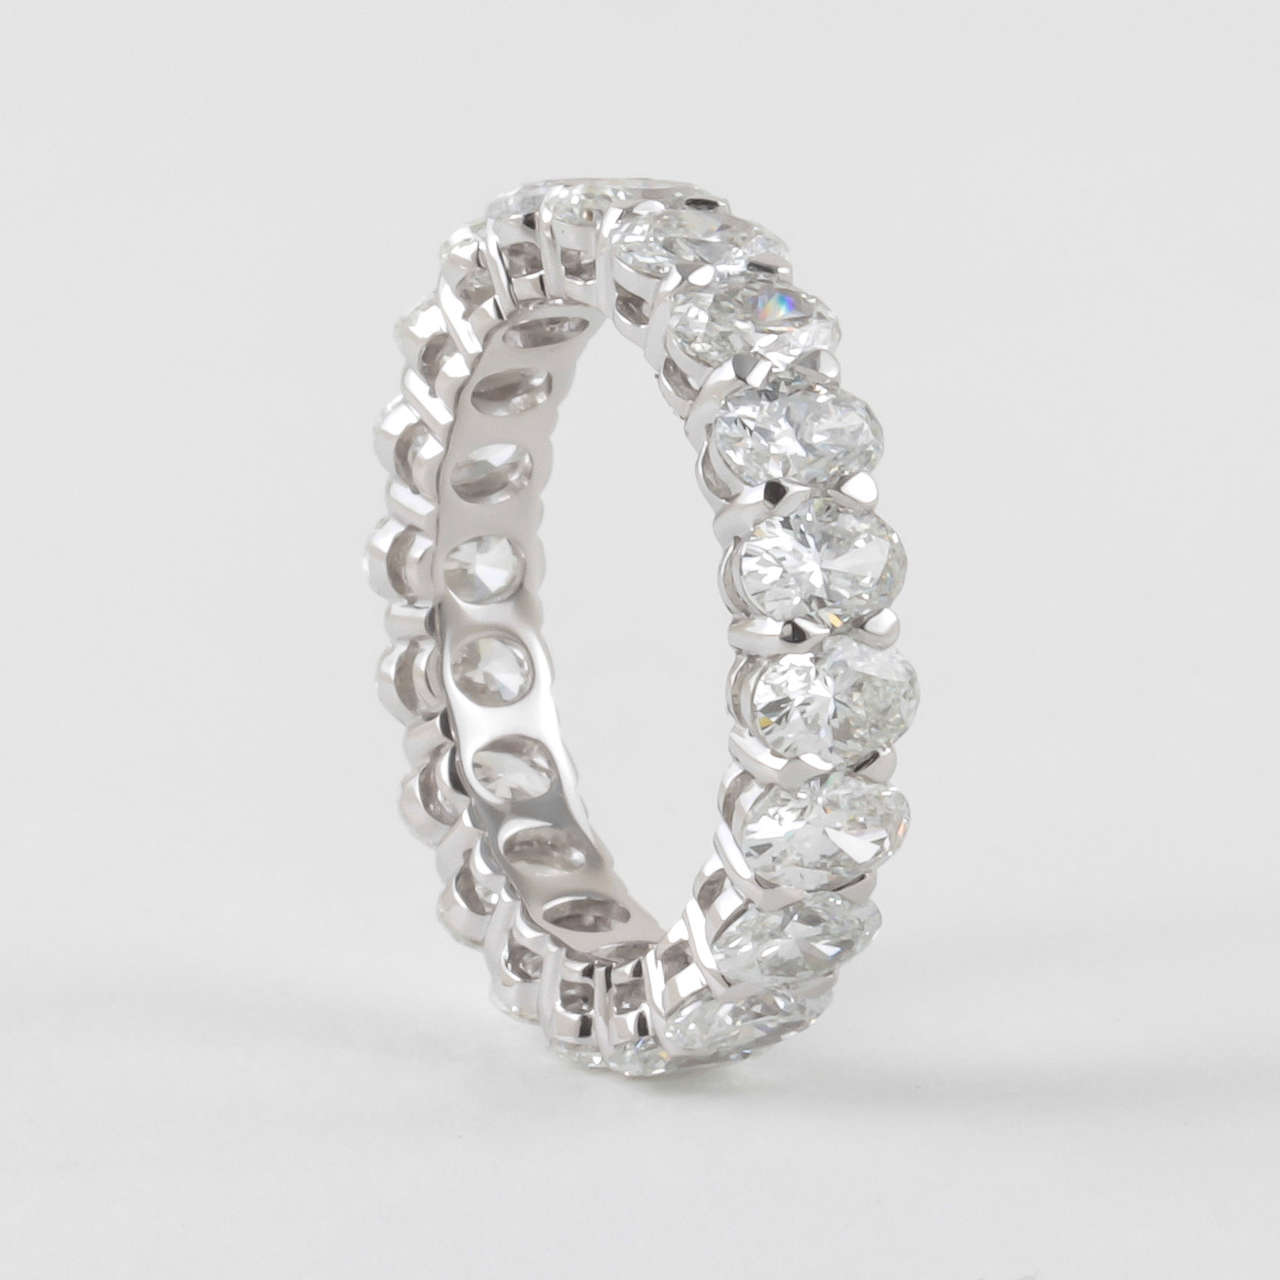 Un anneau éternel en diamant unique parmi les nombreux que nous proposons.

4.86 carats de diamants de forme ovale. 

G couleur Vs clarté

or blanc 18k

Taille de l'anneau réglable, actuellement une taille  6.5